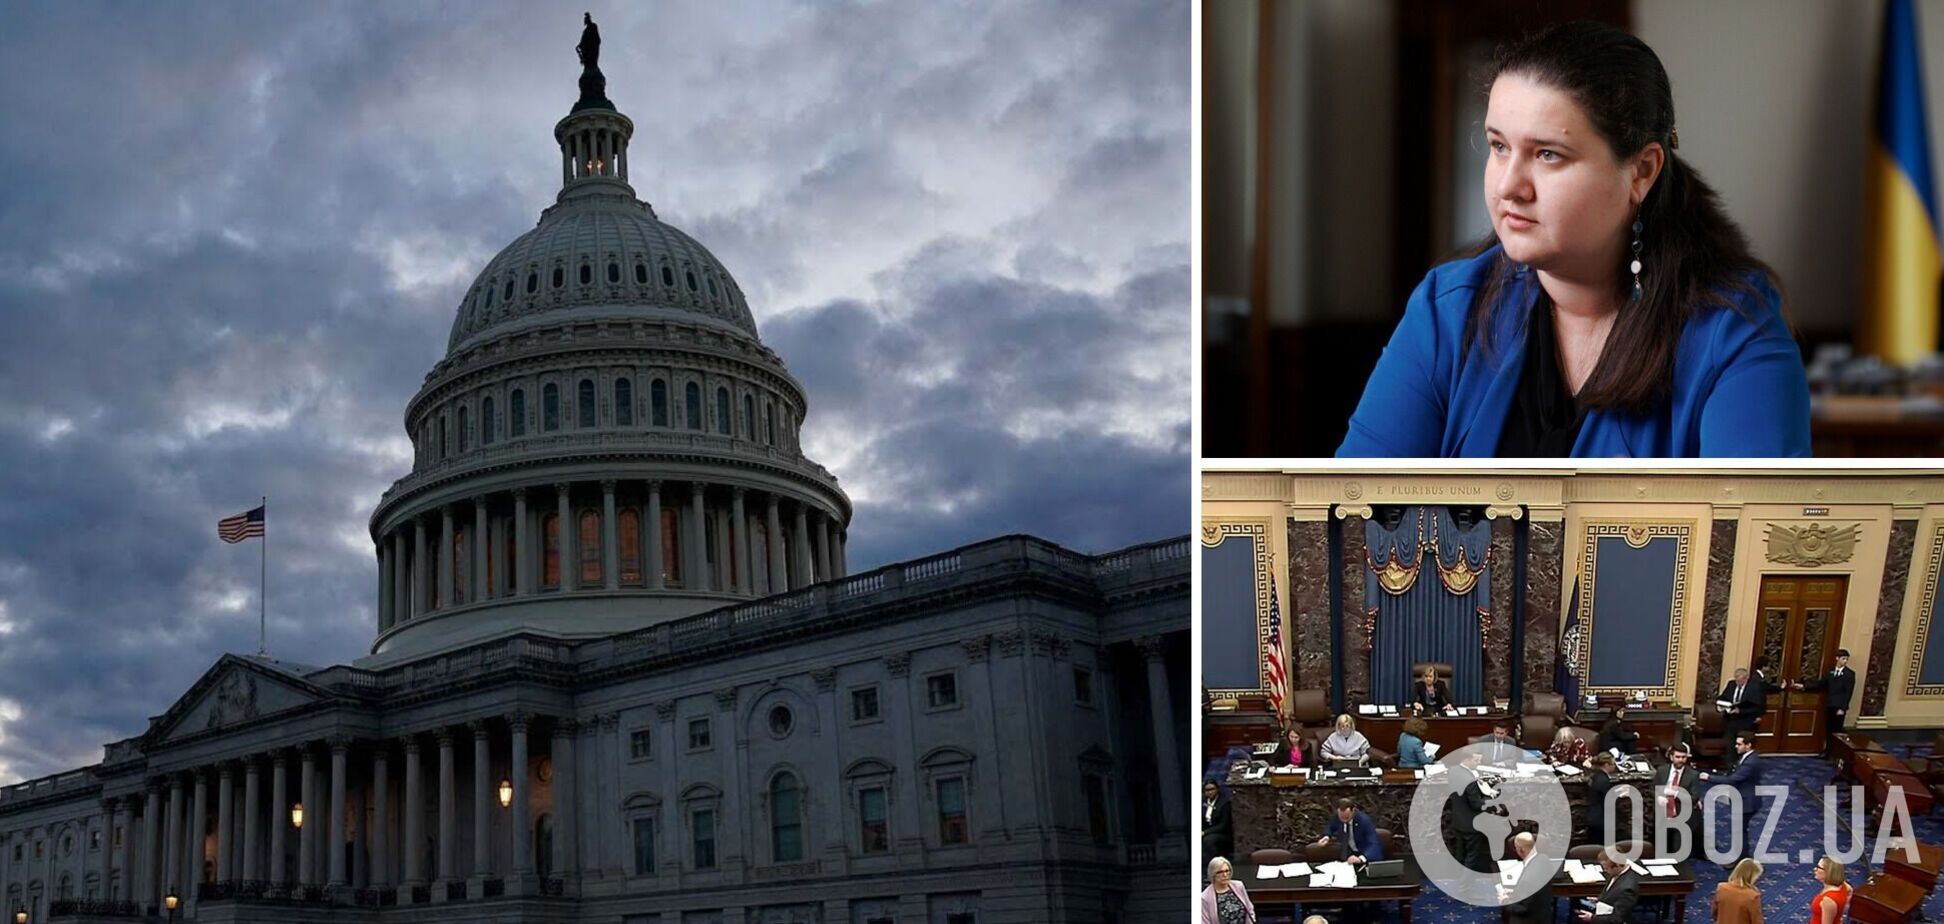 Законопроект о помощи Украине рассмотрят без миграционной реформы: Маркарова уточнила, что происходит в Сенате США